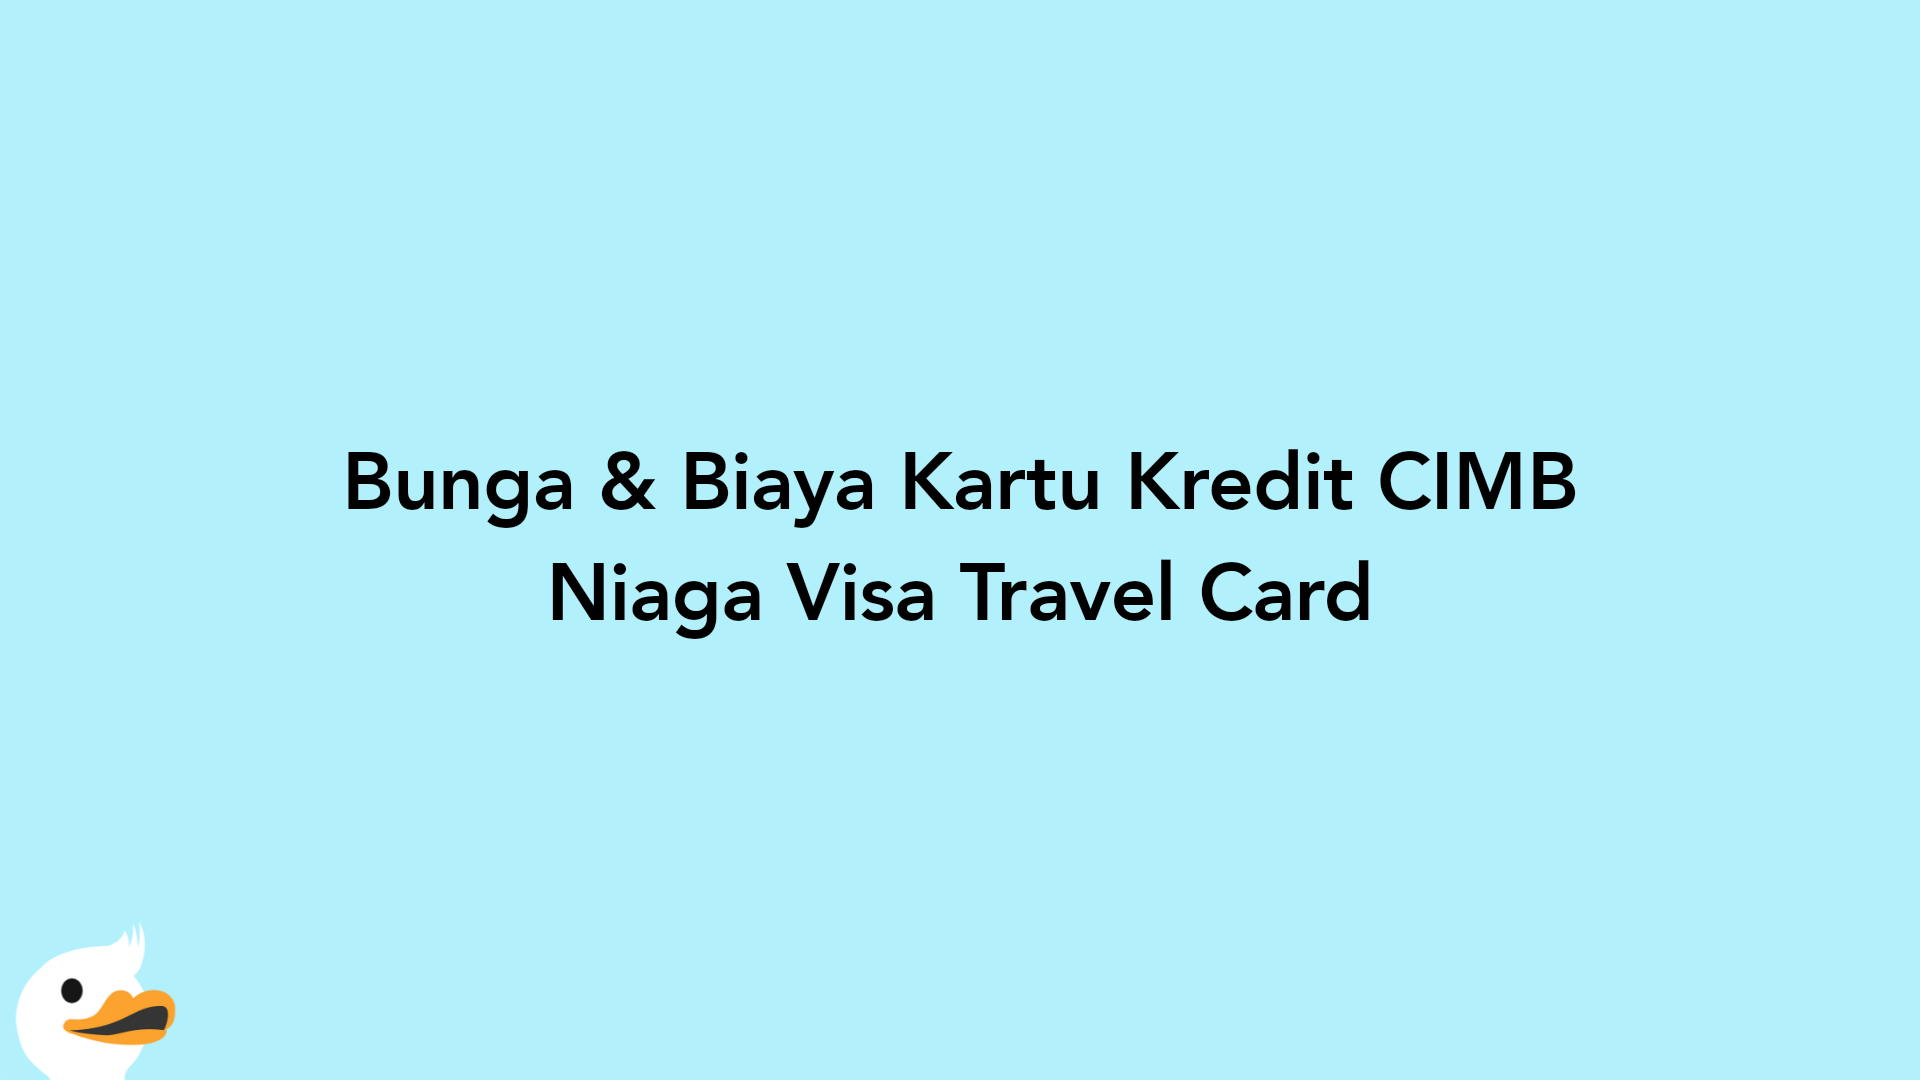 Bunga & Biaya Kartu Kredit CIMB Niaga Visa Travel Card